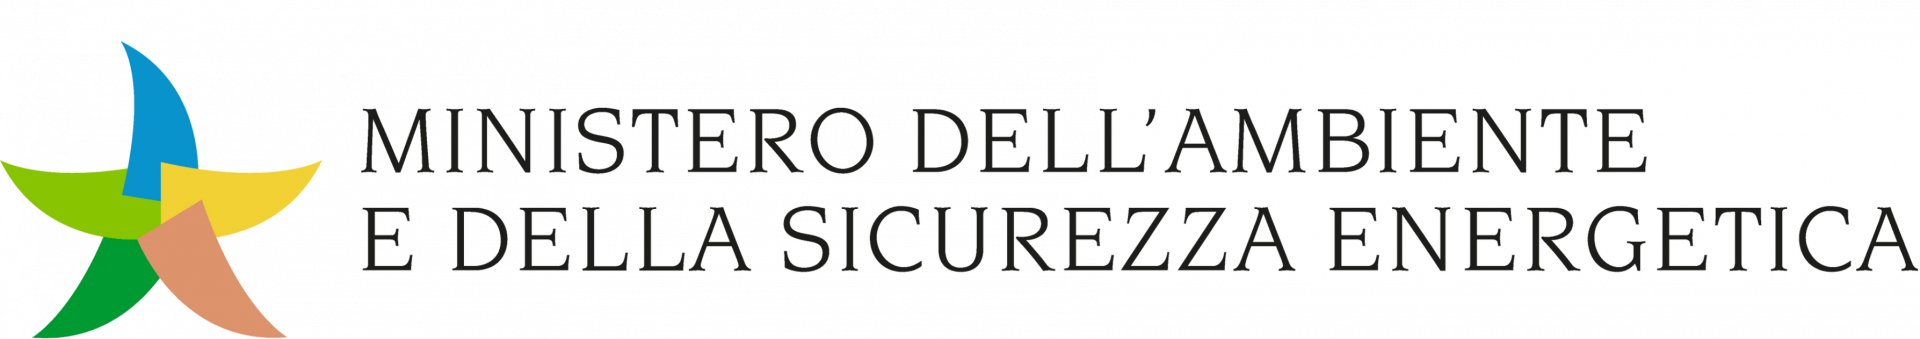 logo italia ministerie dell dell'ambiente e della sicurezza energetica